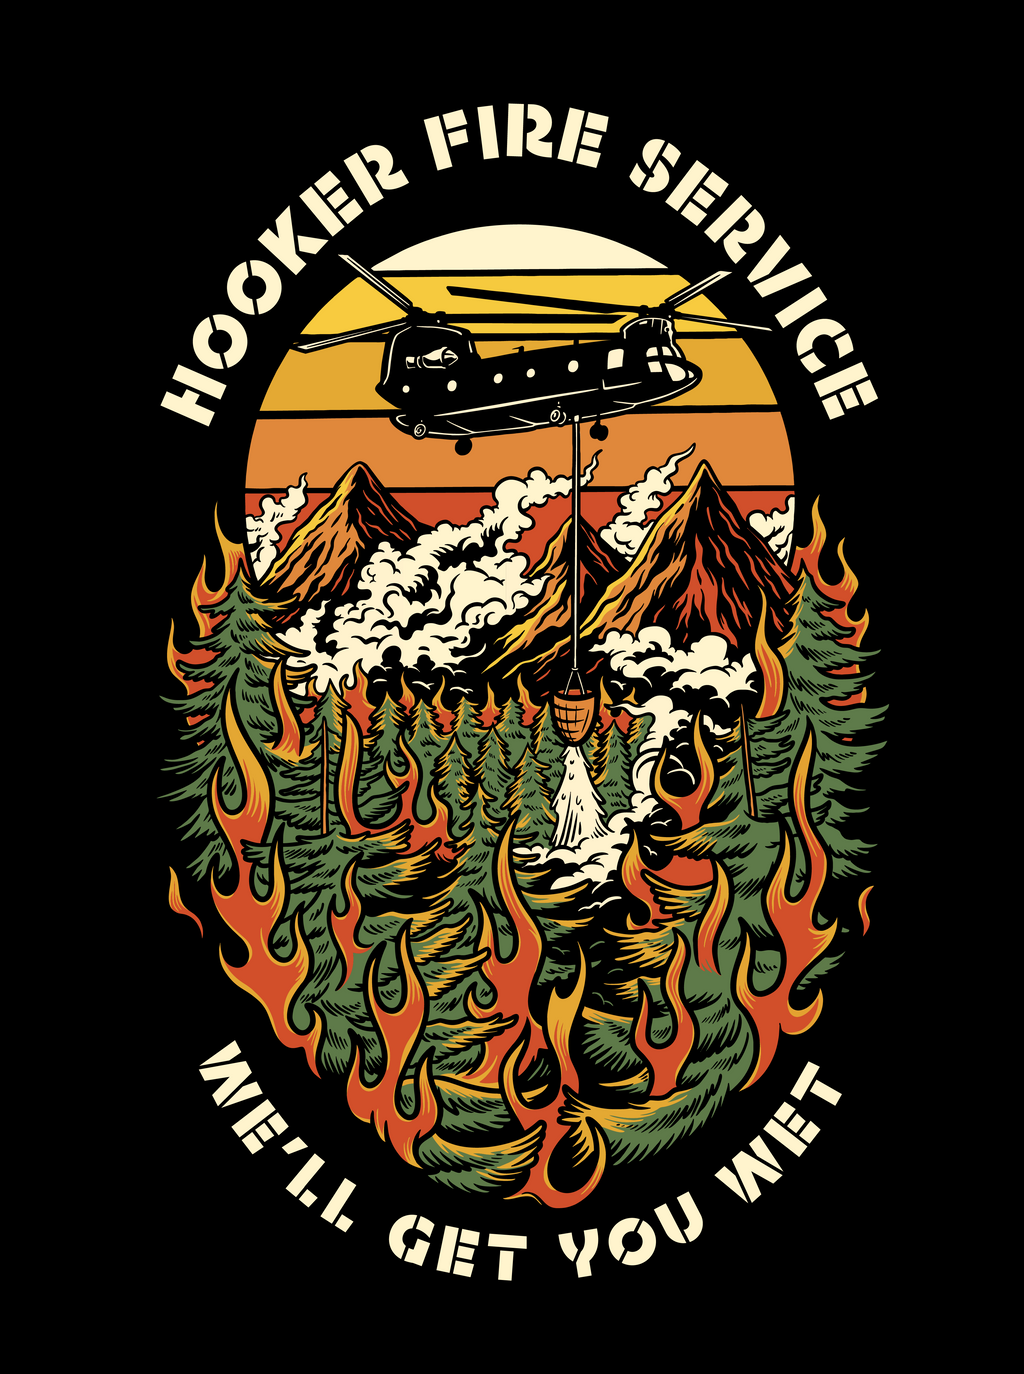 Hooker Fire Service Flag